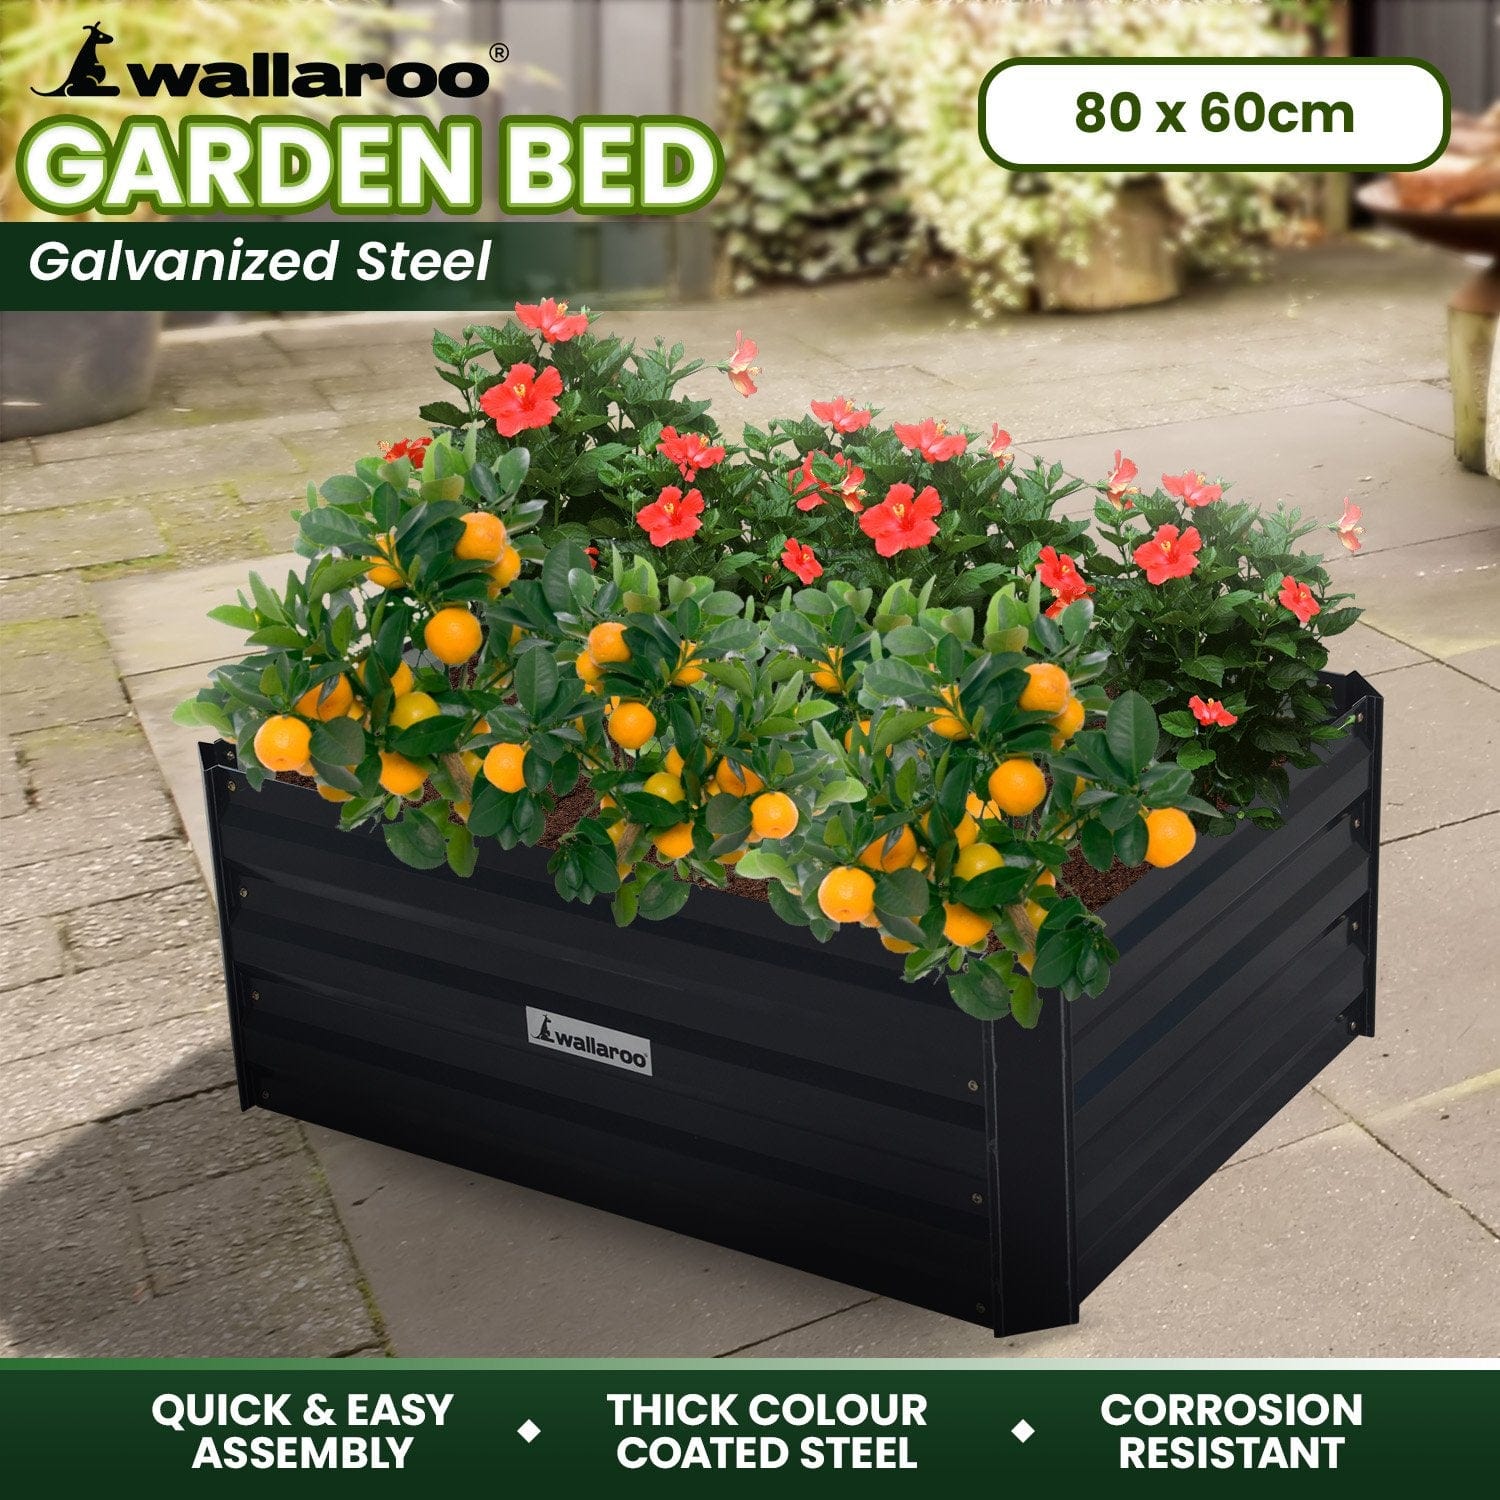 Garden Bed 80 x 60 x 30cm Galvanized Steel - Black